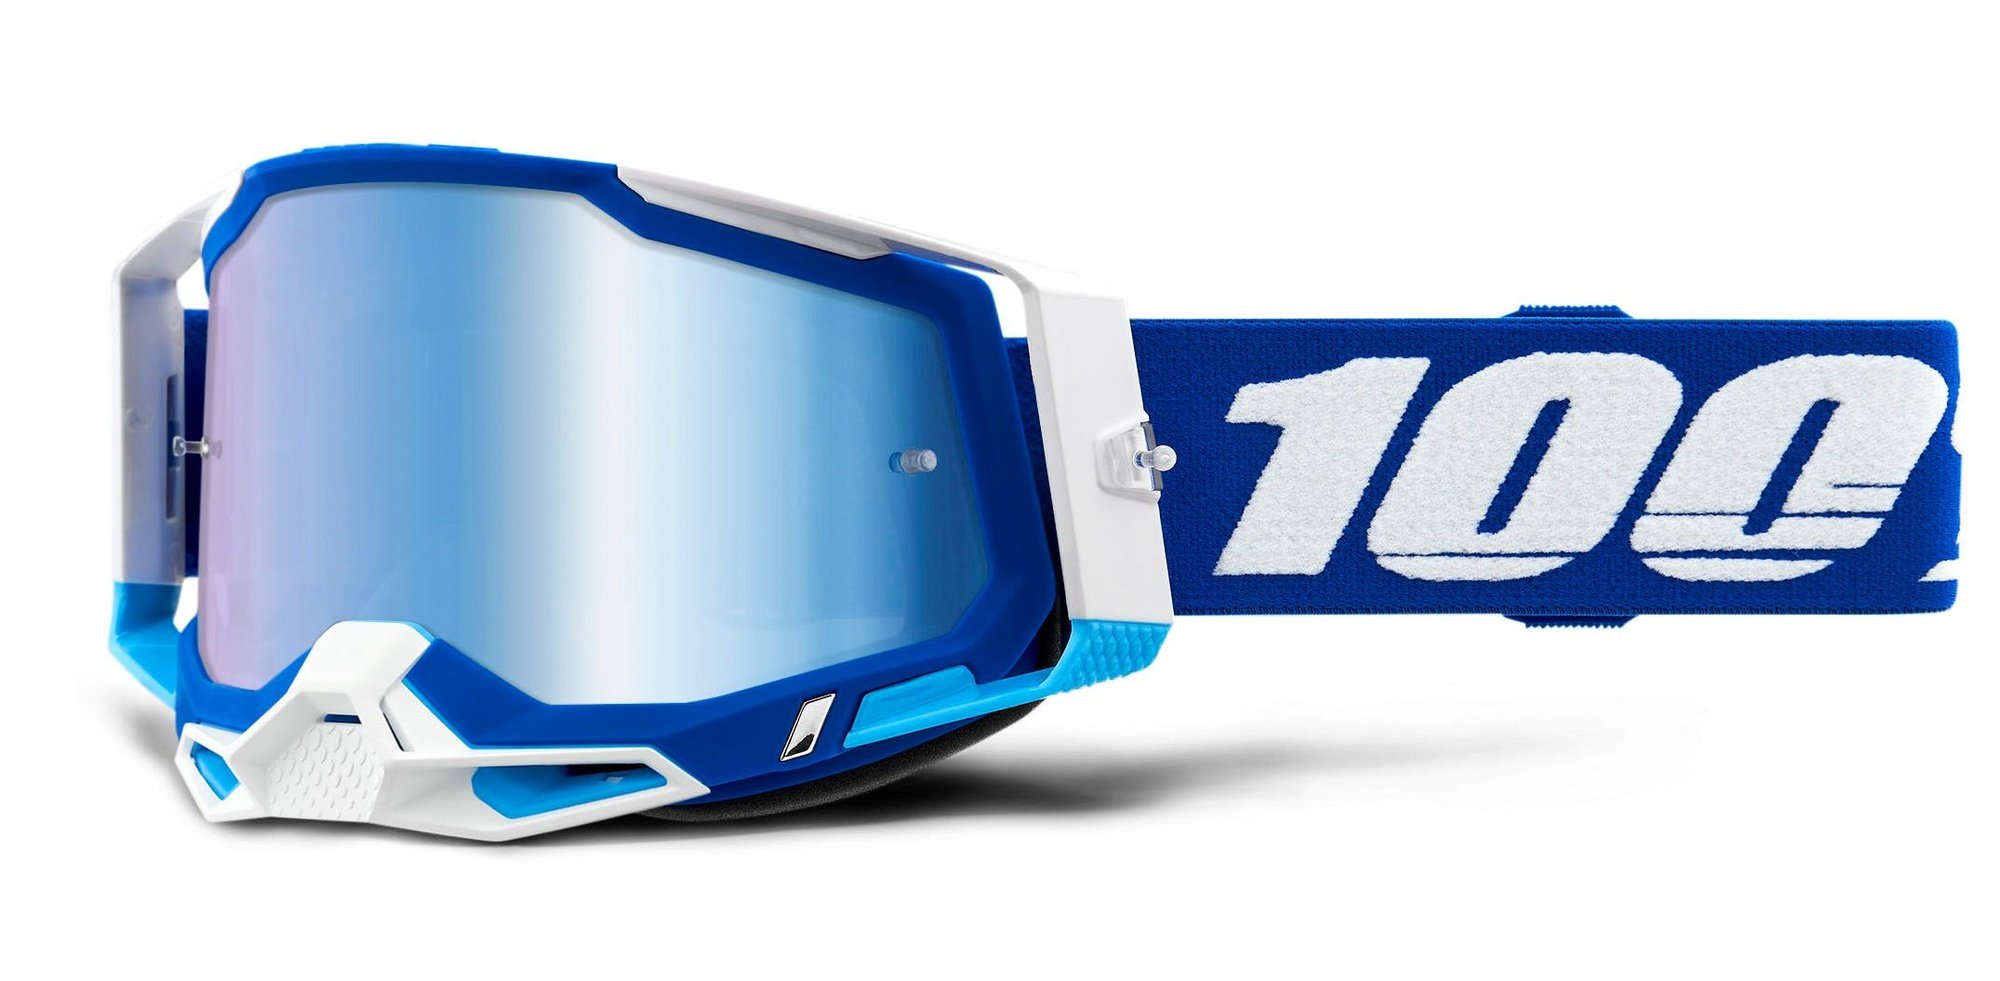 Obrázek produktu RACECRAFT 2, 100% brýle modré, zrcadlové modré plexi 50121-250-02